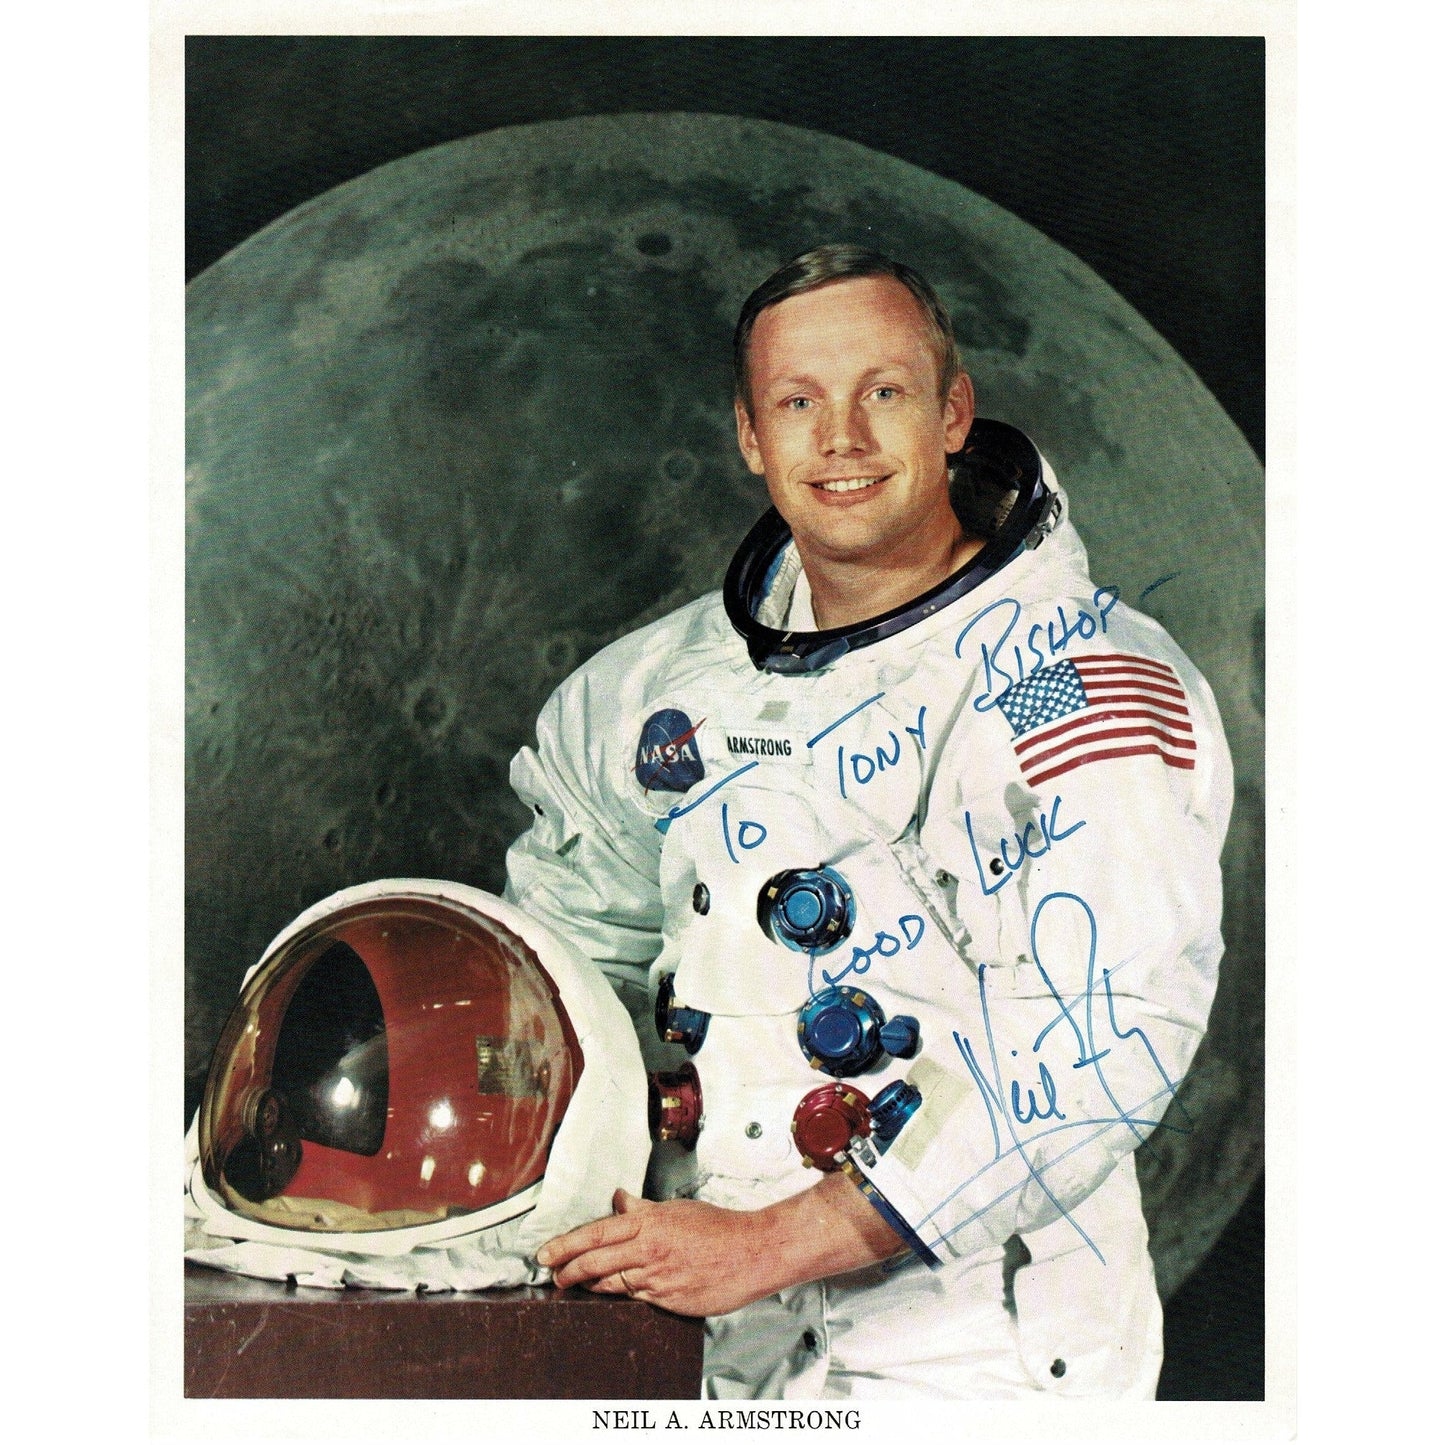 Neil Armstrong Apollo 11 autographed NASA photograph - The Memorabilia Club